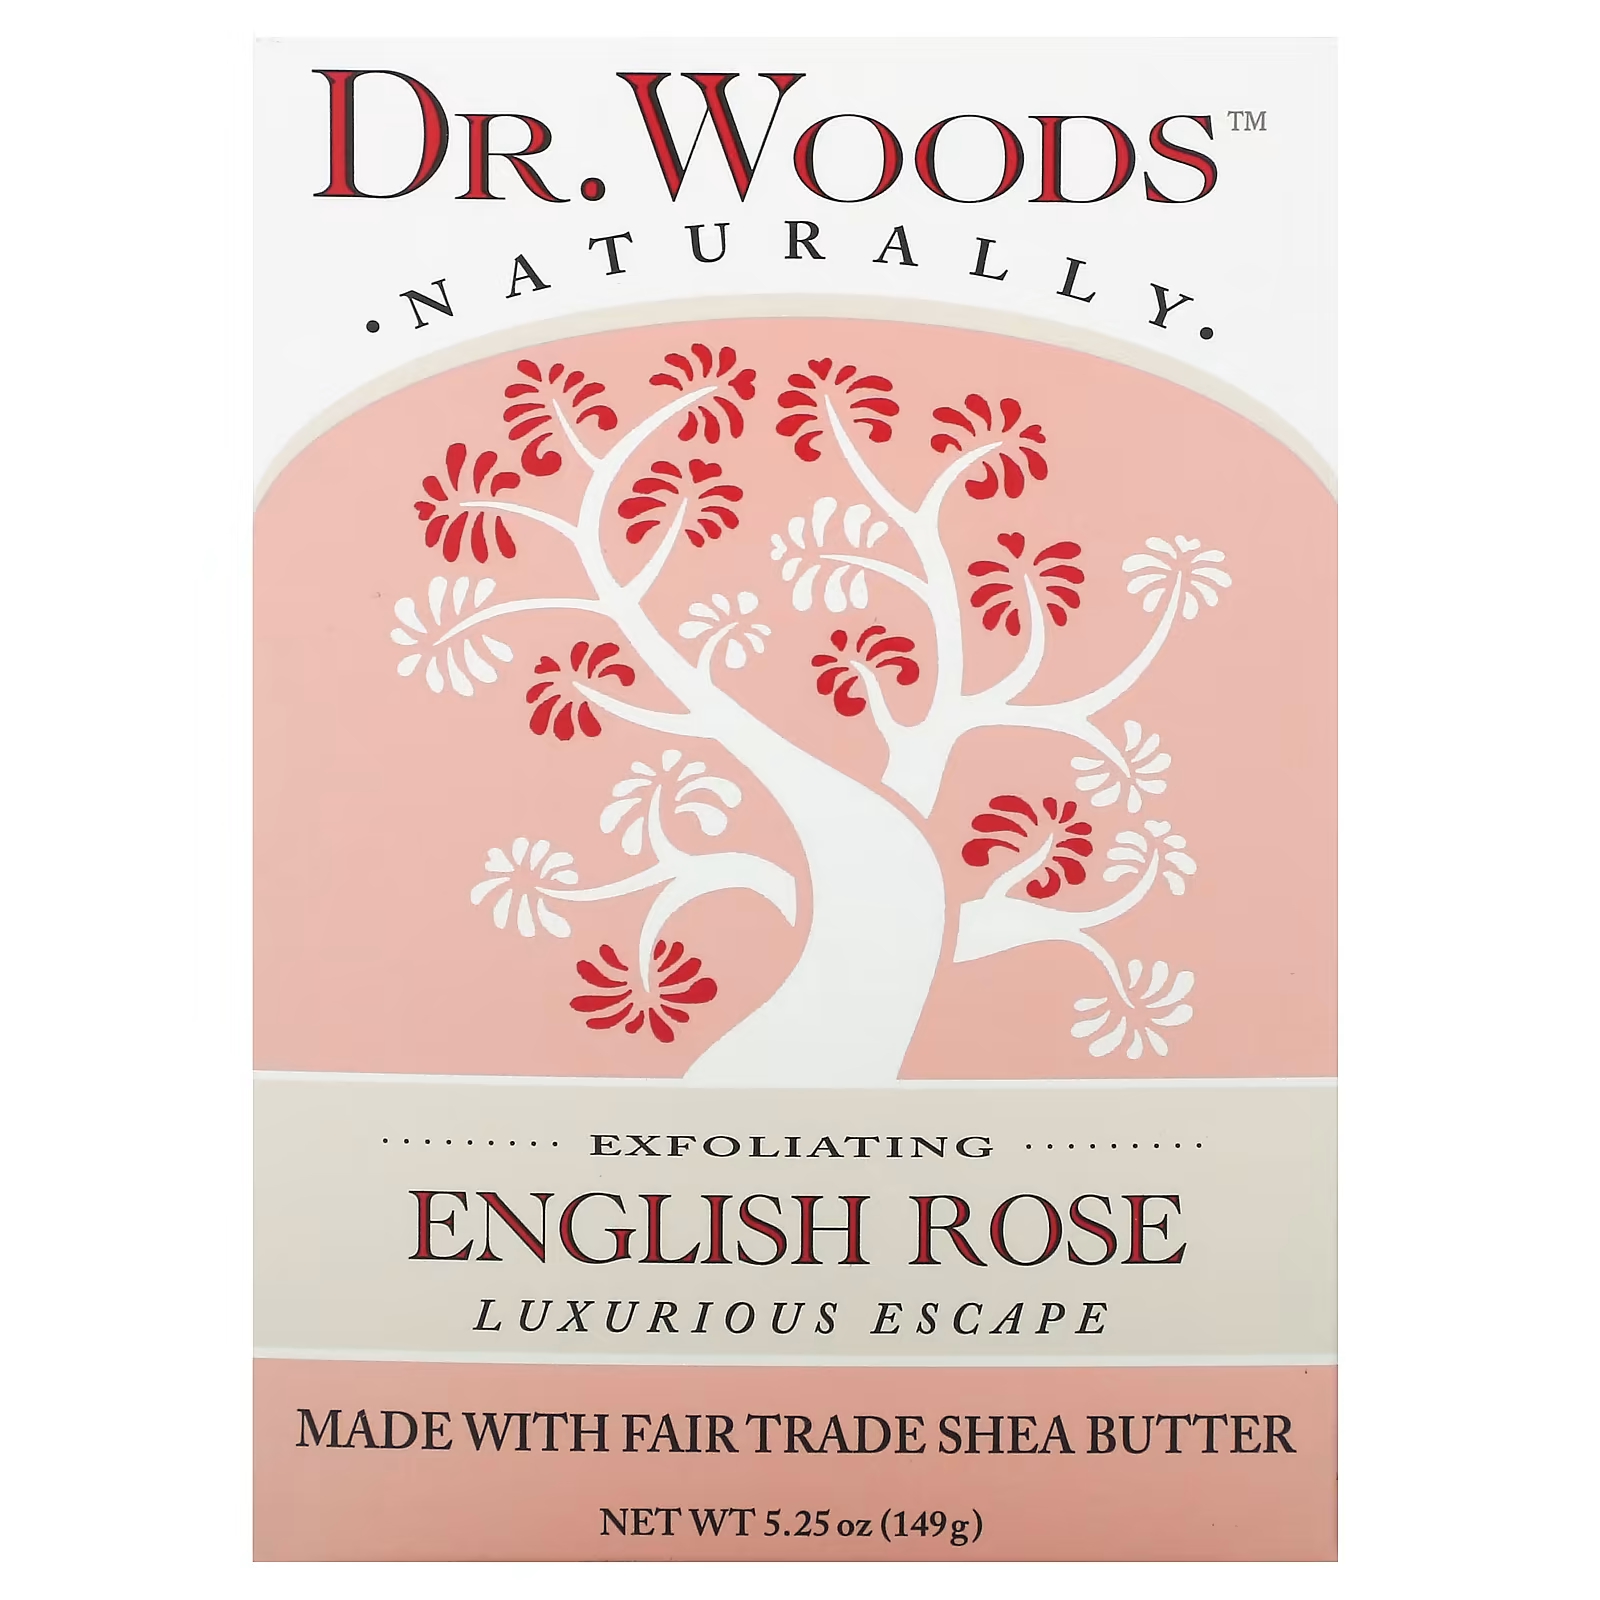 Woods Отшелушивающее мыло «Английская роза», 5,25 унции (149 г) Dr. Woods dr woods брусковое мыло имбирь и цитрус 149 г 5 25 унции